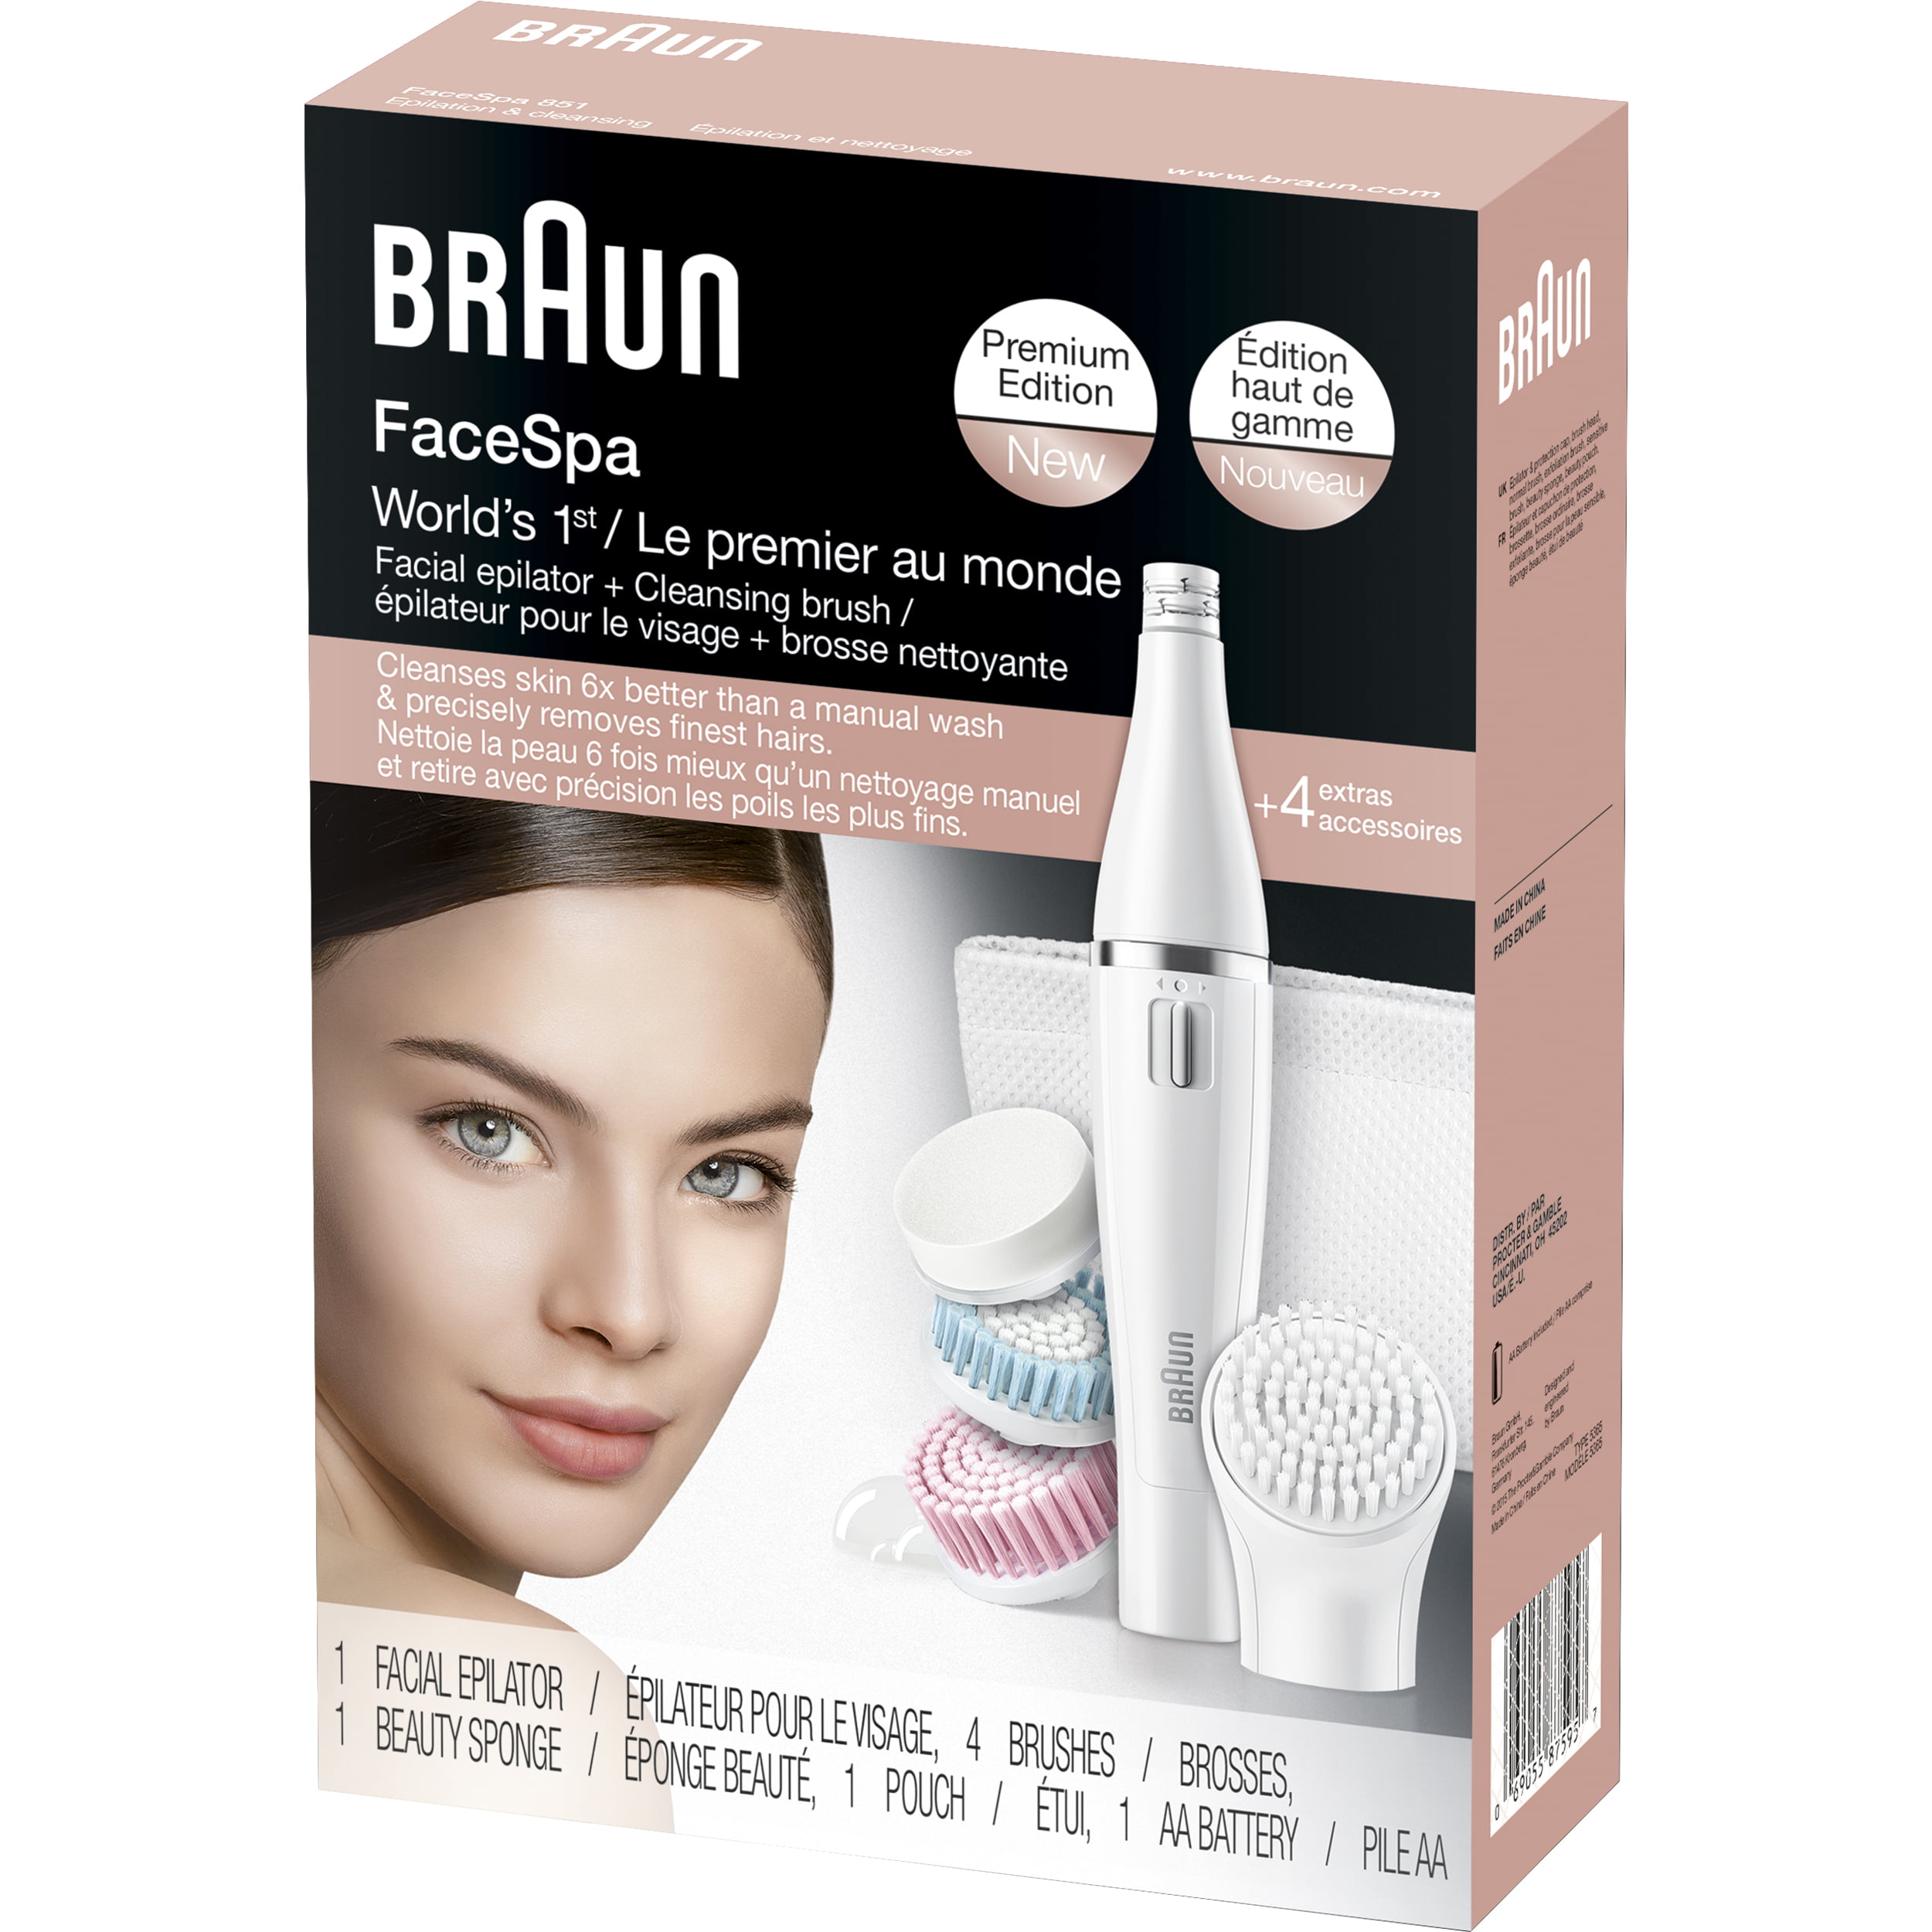 Braun 851 FaceSpa Mini-Facial Epilator with 4 Facial Cleansing 